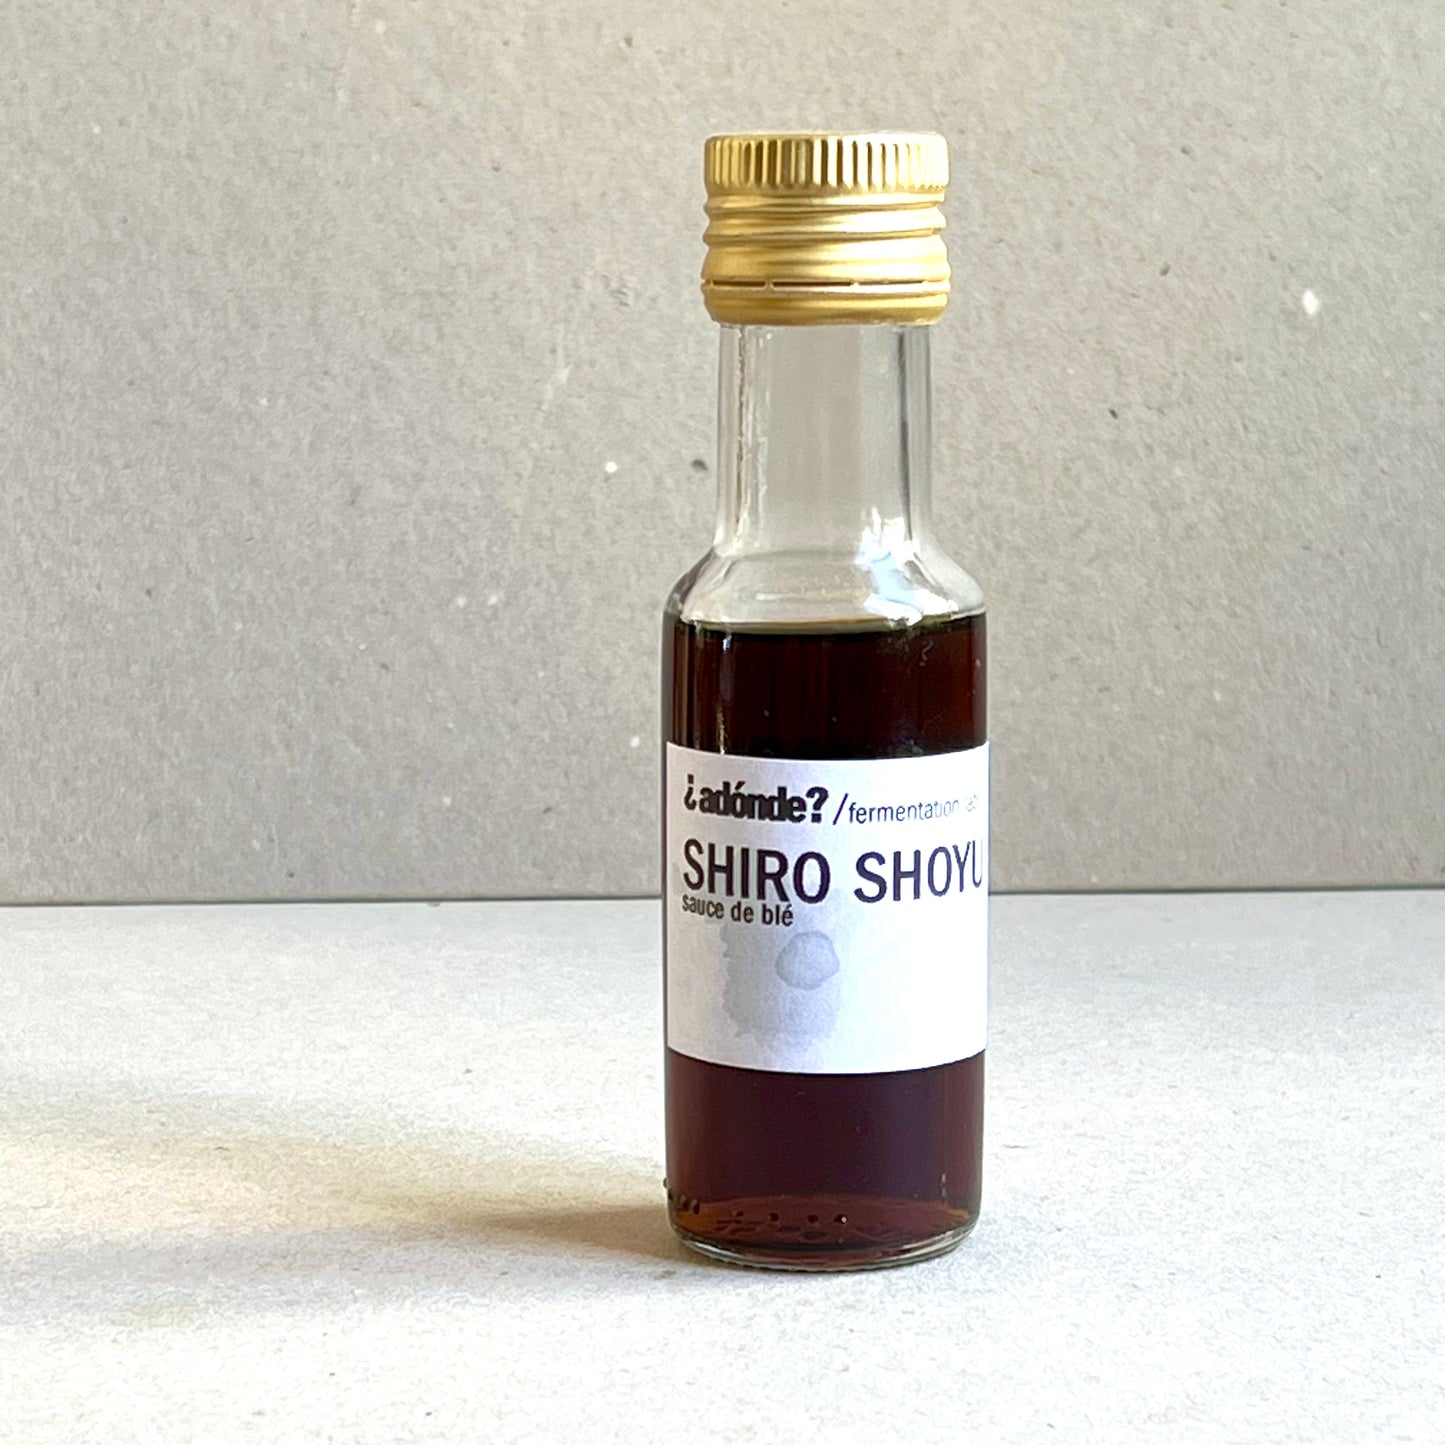 shiro shoyu - sauce de blé